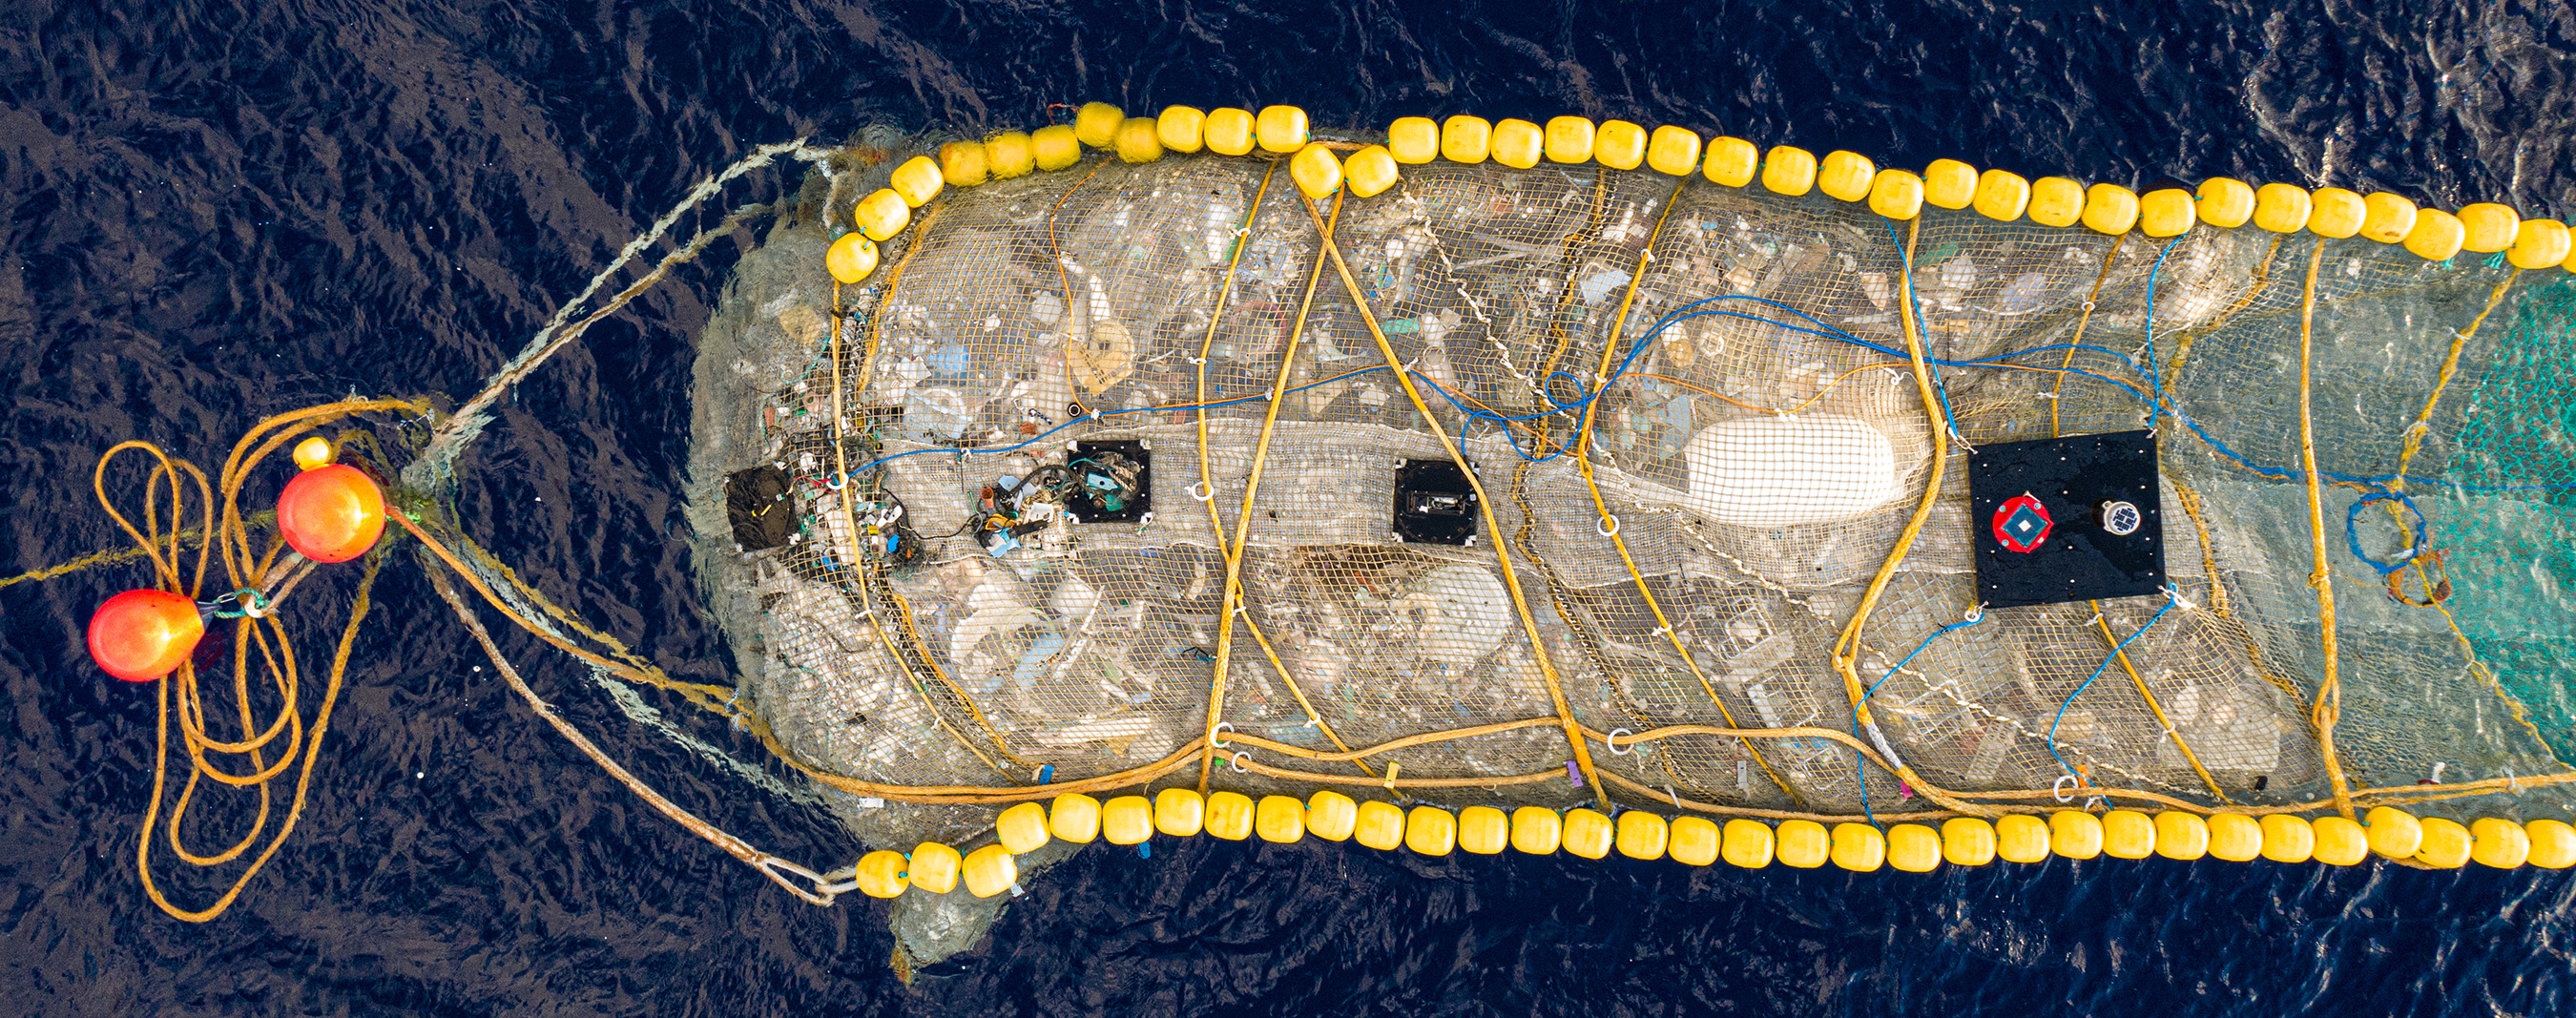 oceanic garbage in a net